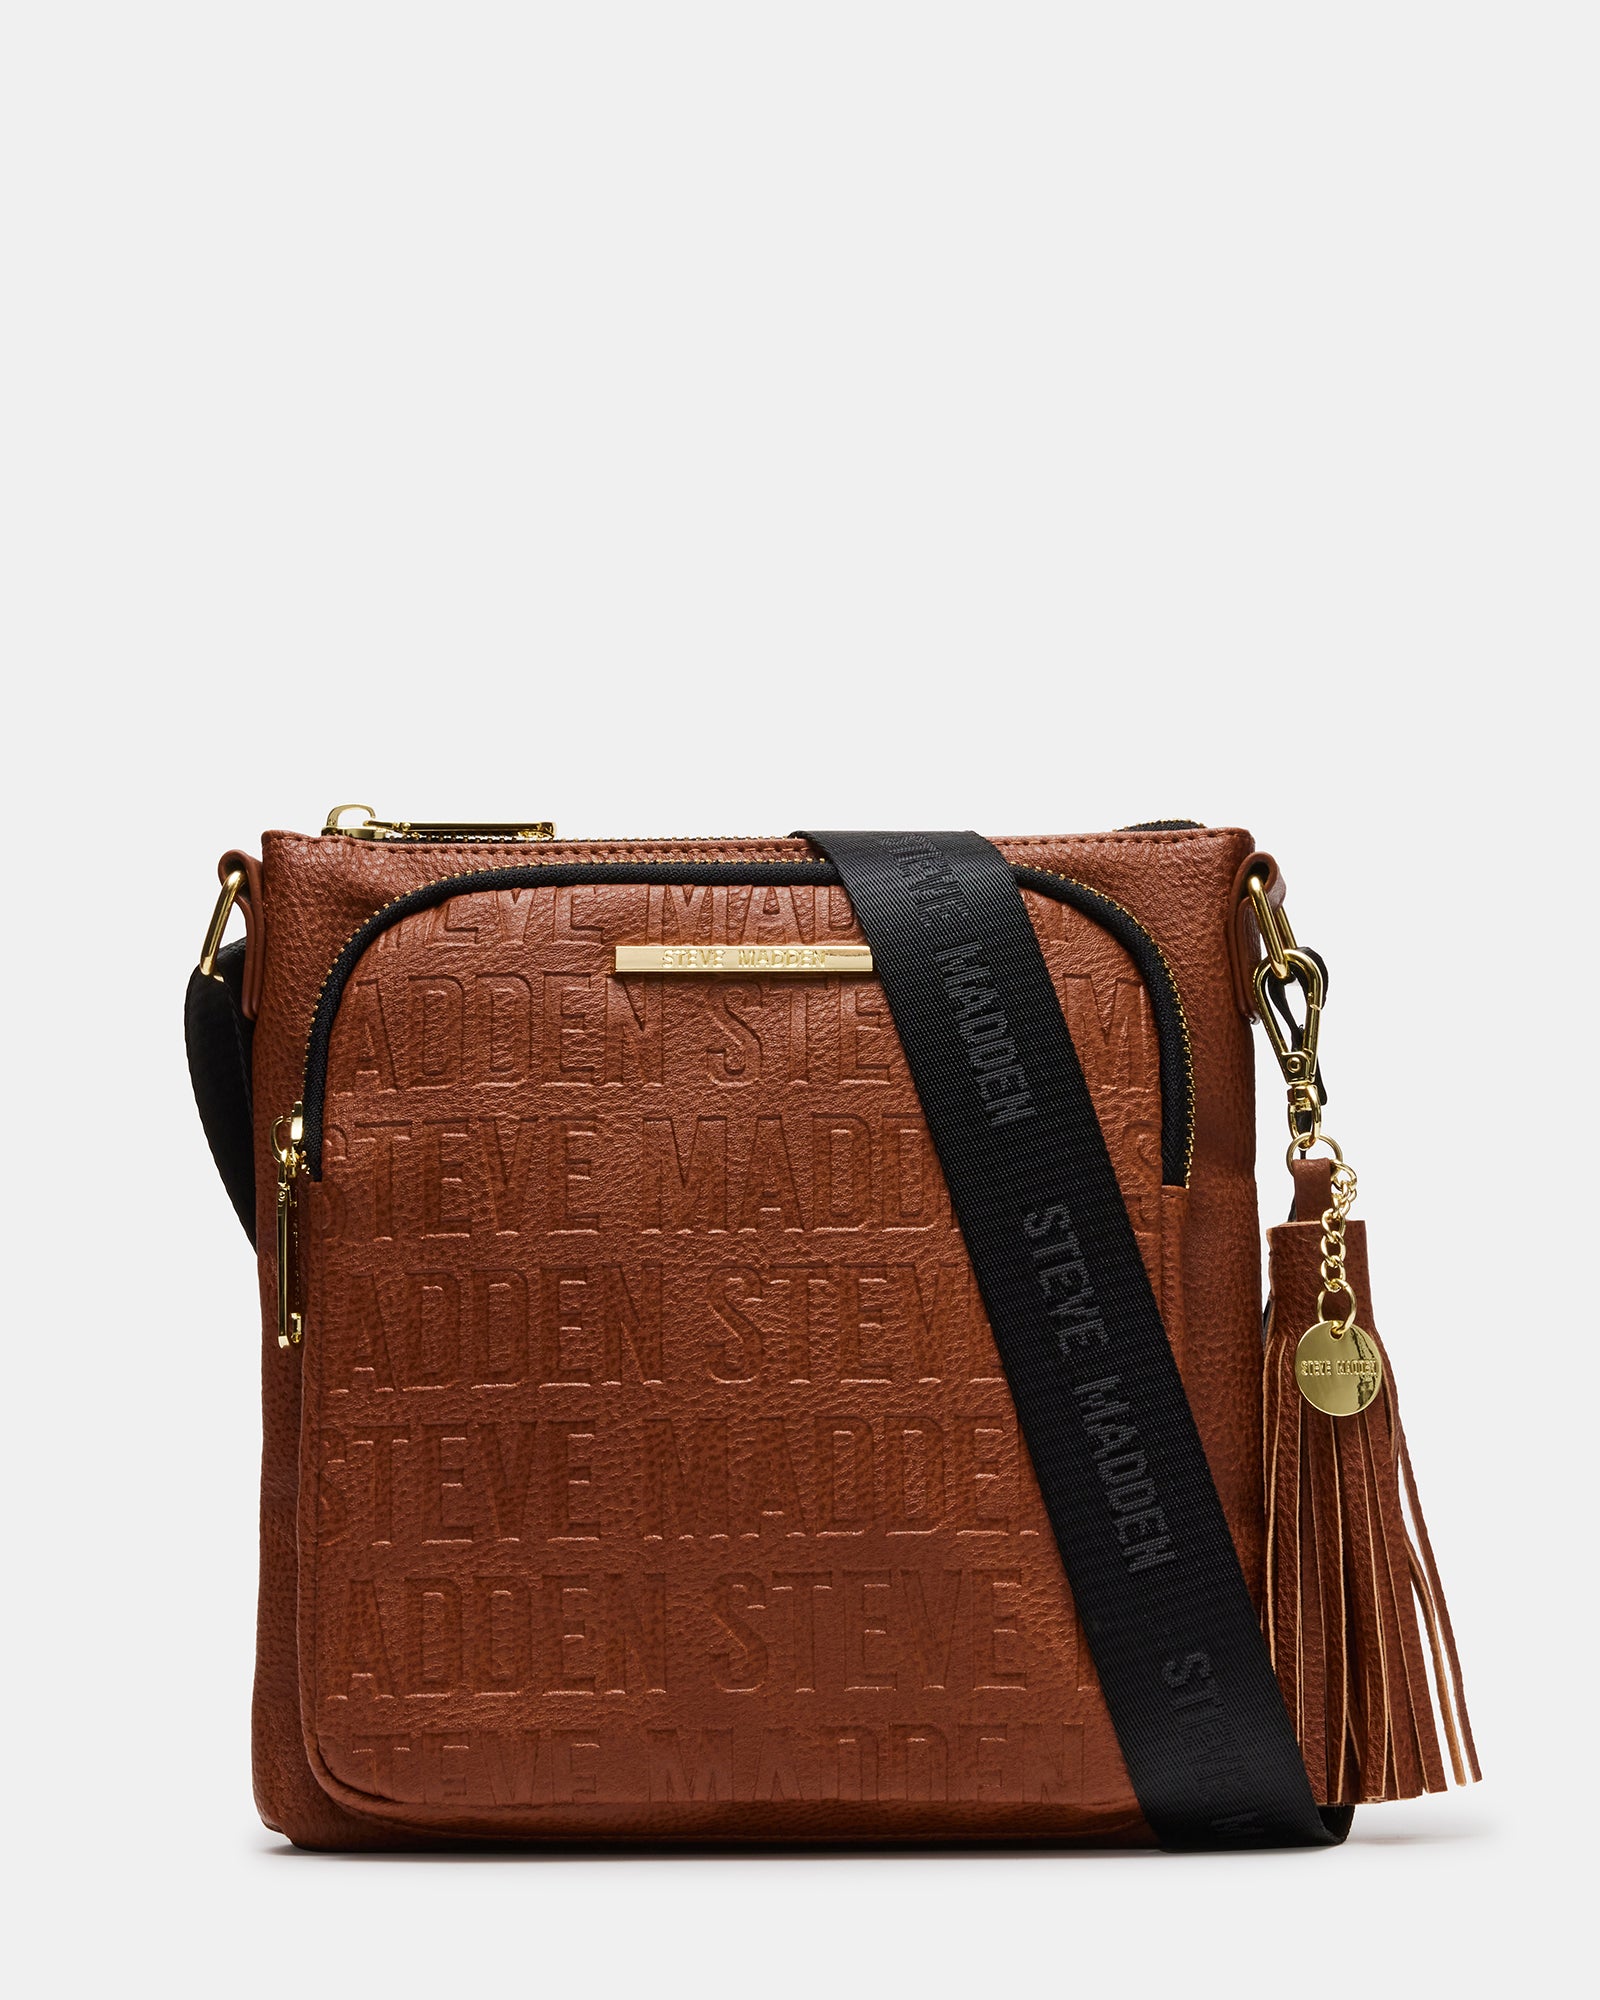 Women's Handbags, Purses, Backpacks & Accessories Online Shop – Luke Lady